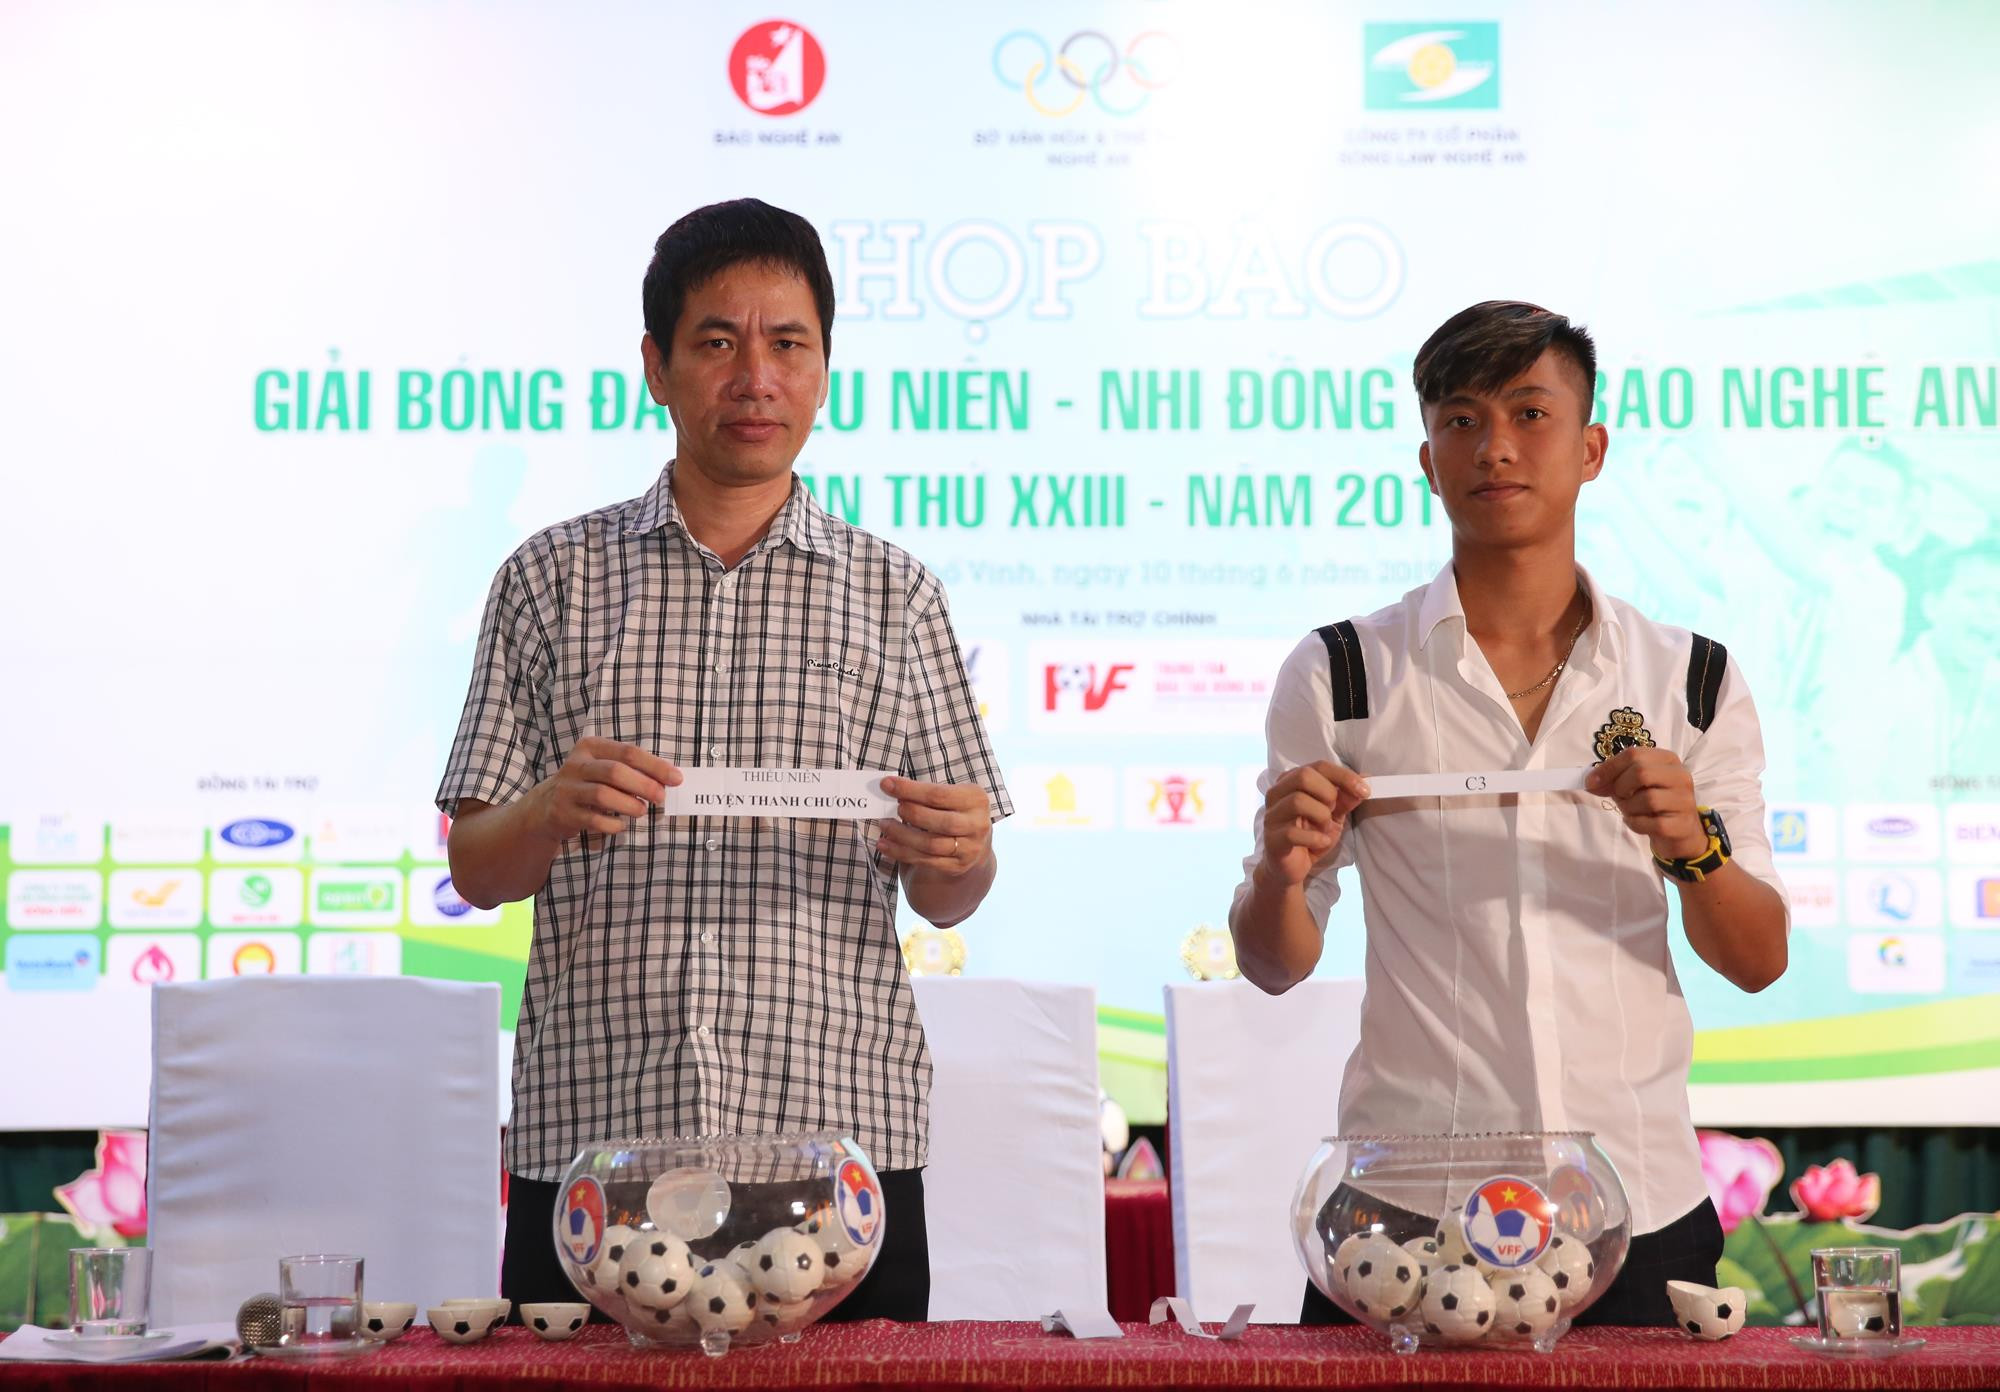 Cầu thủ Phan Văn Đức và nhà báo Thành Châu bốc thăm, chia bảng đấu lứa tuổi thiếu niên. Ảnh: Đức Anh